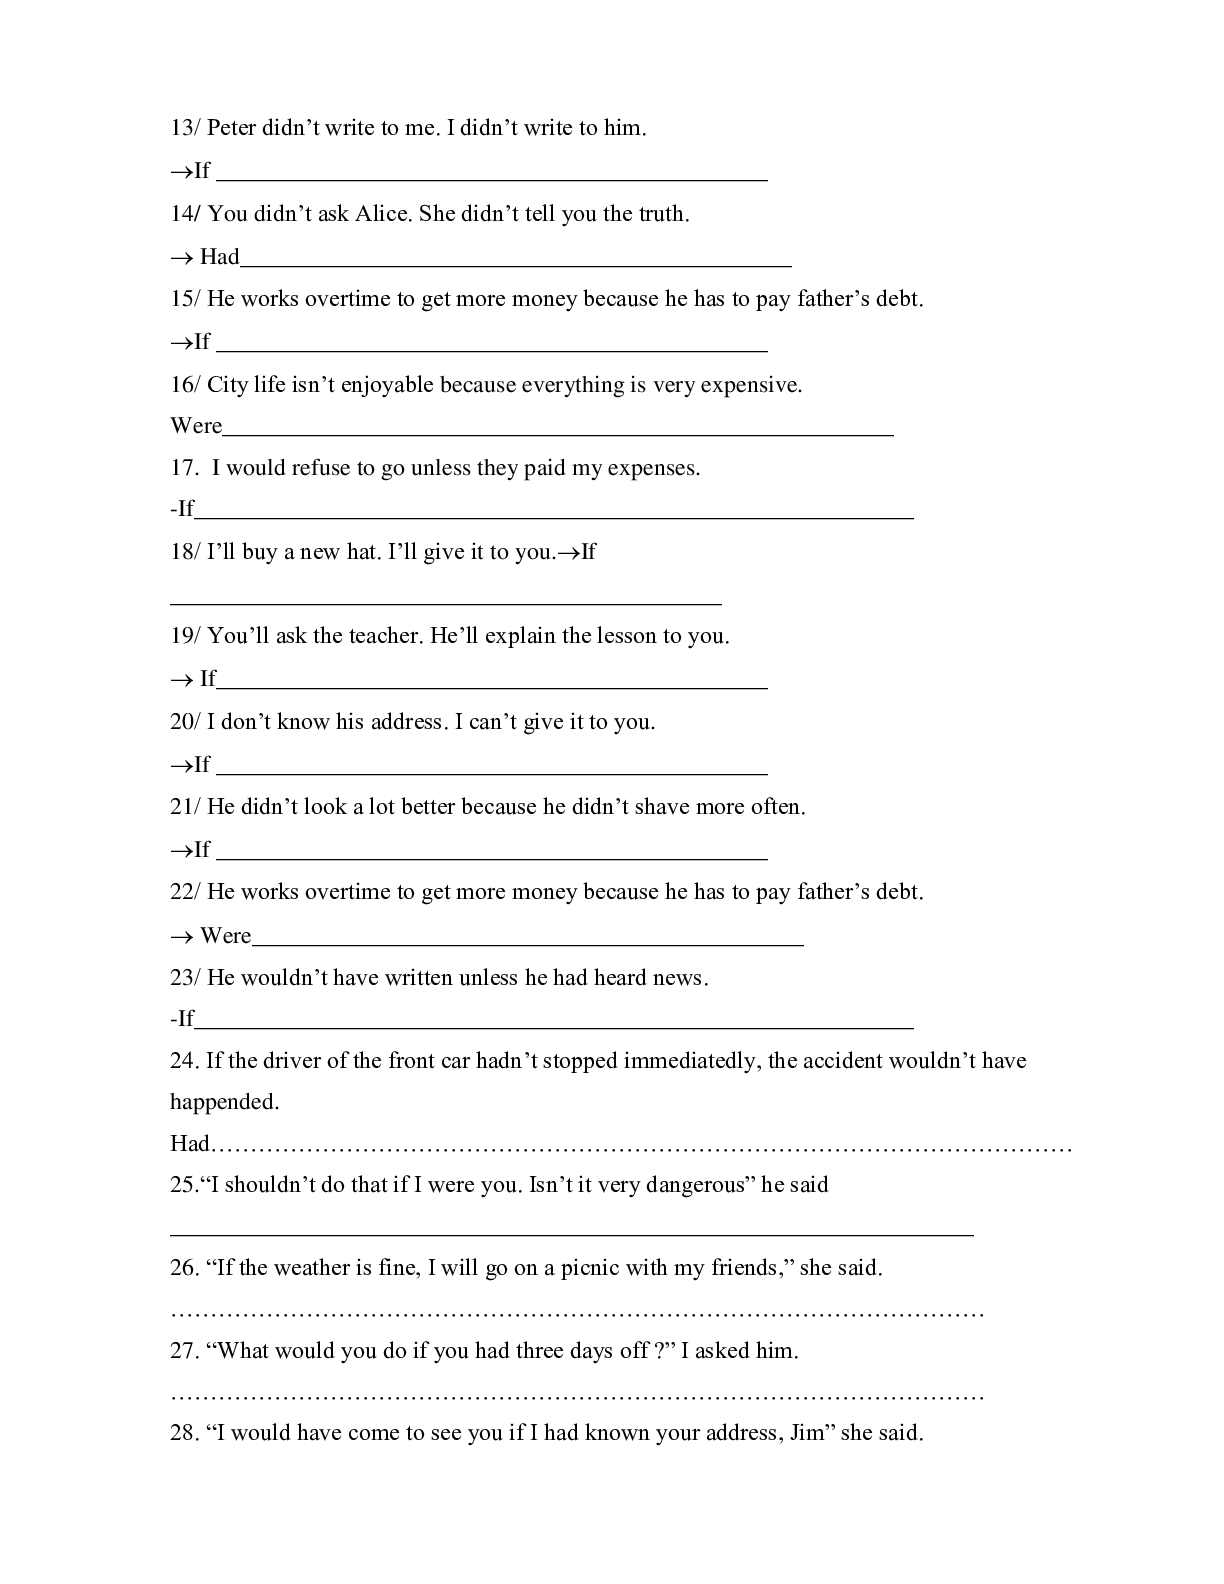 Chuyên đề: Câu điều kiện môn Tiếng Anh lớp 12 (trang 2)